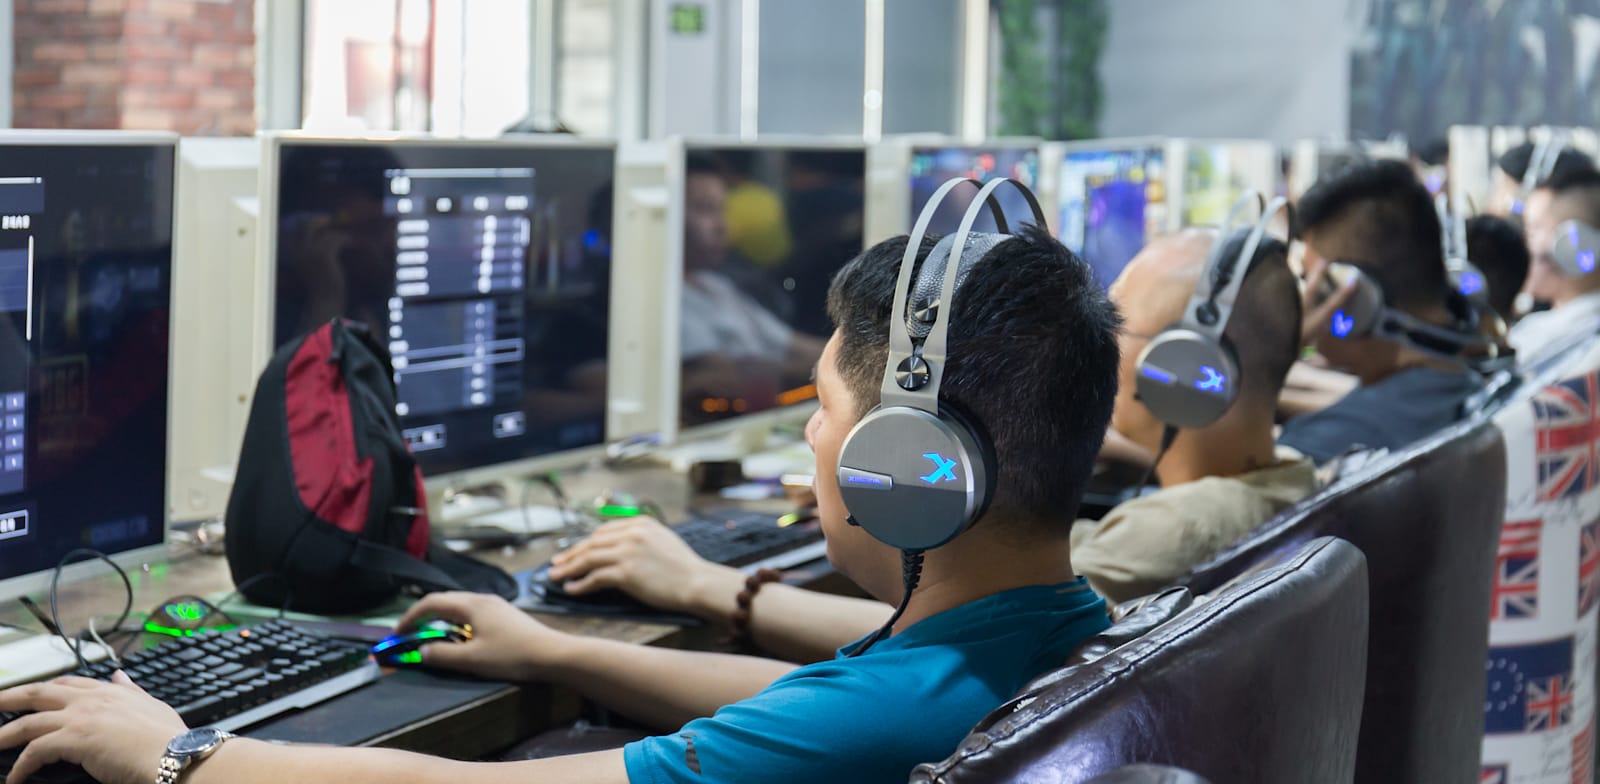 אנשים משחקים במשחקי מחשב באינטרנט קפה בסין / צילום: Shutterstock, xujun